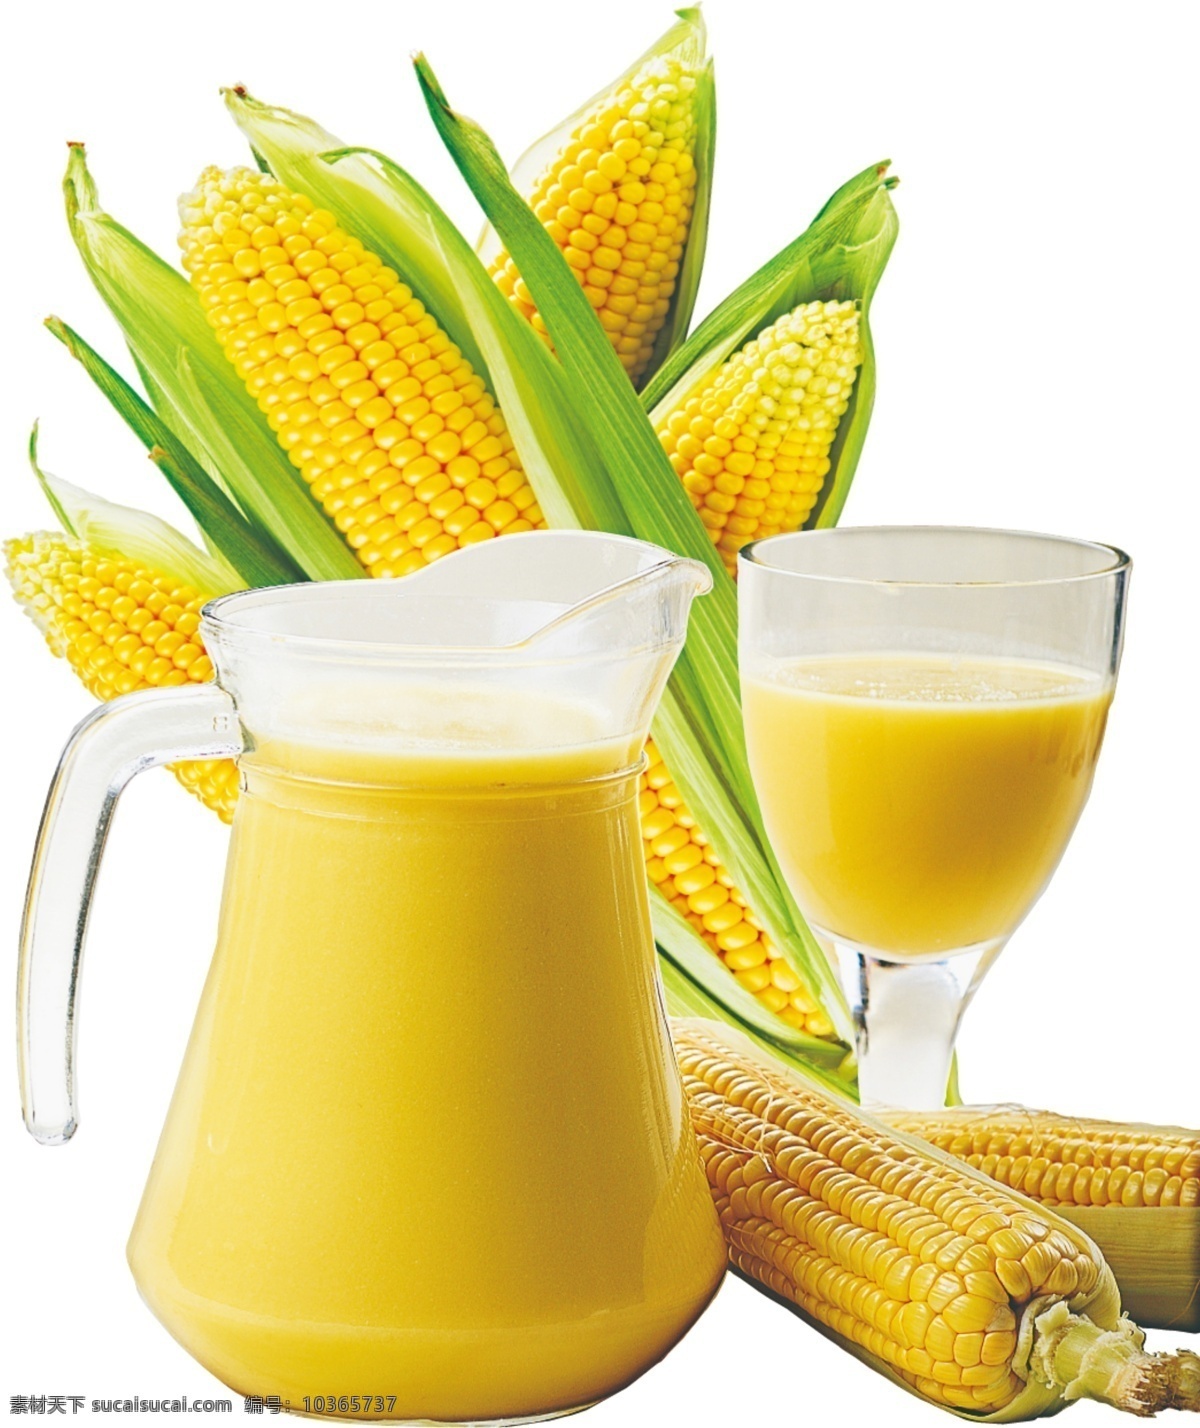 玉米汁 玉米 玉米榨汁 玉米饮料 热饮玉米 食物 餐饮美食 饮料酒水